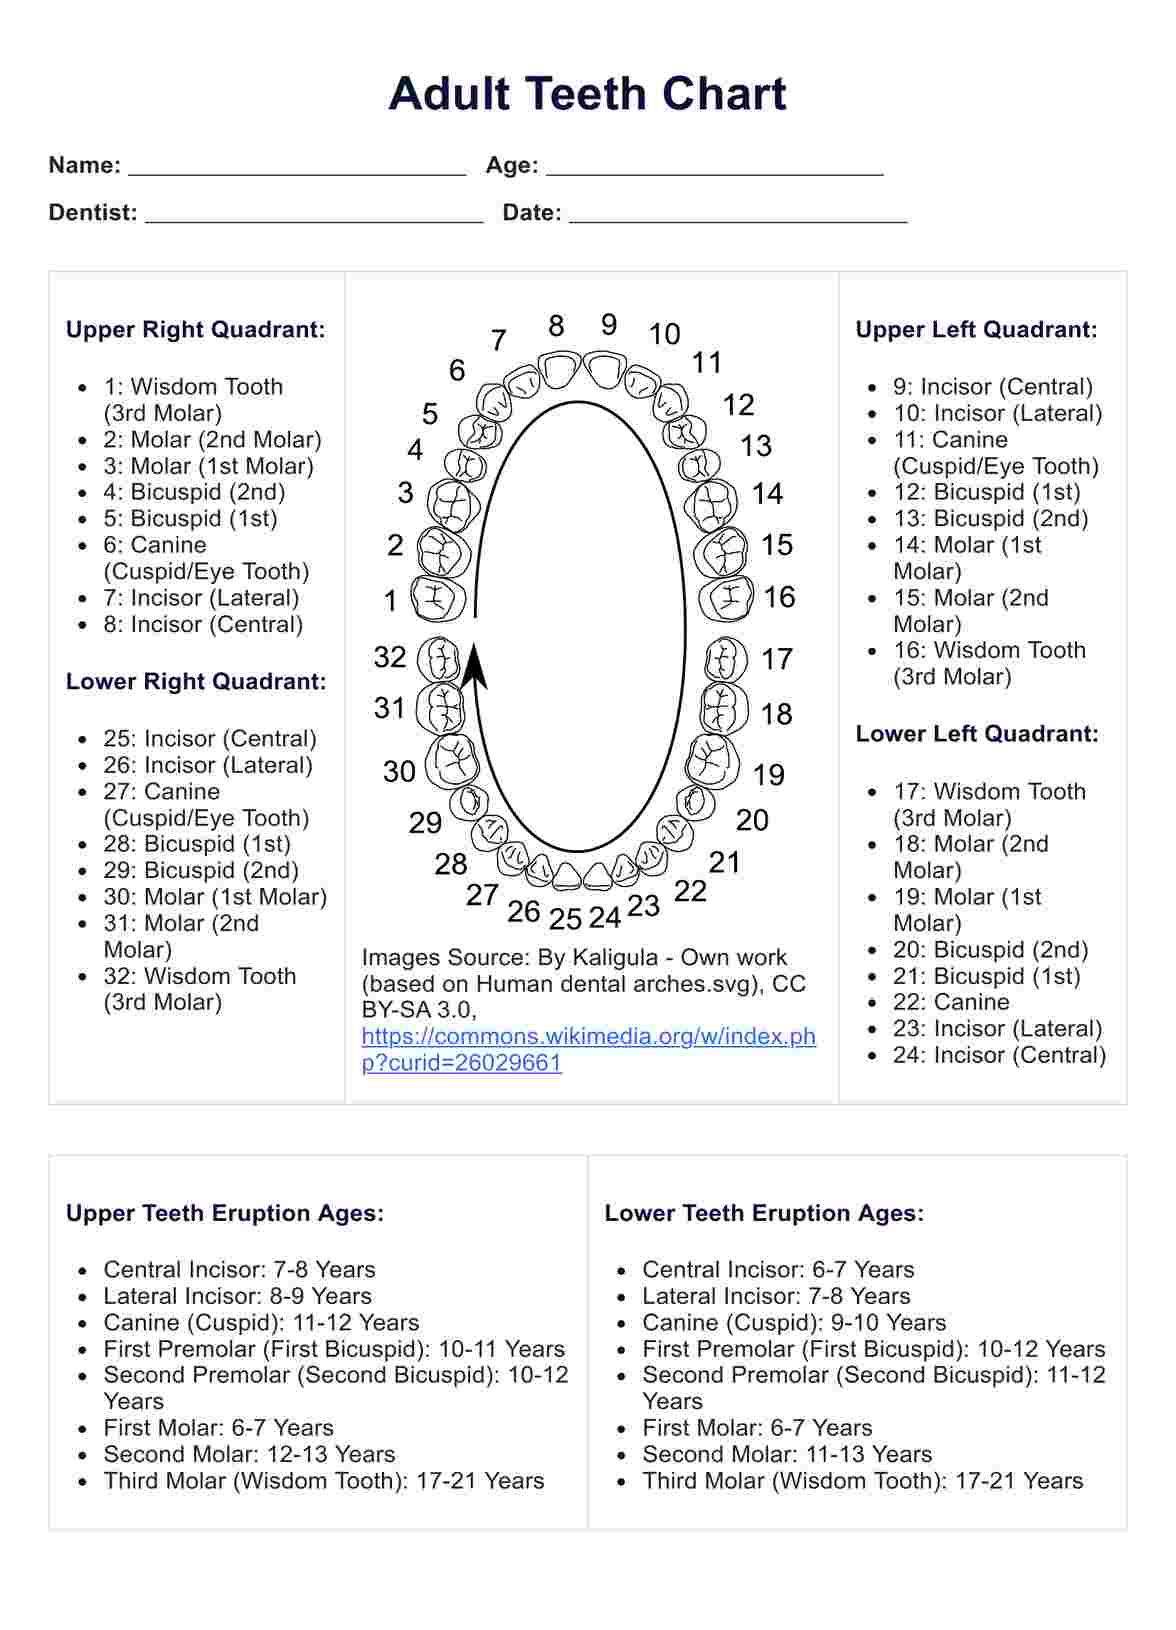 Adult Teeth PDF Example